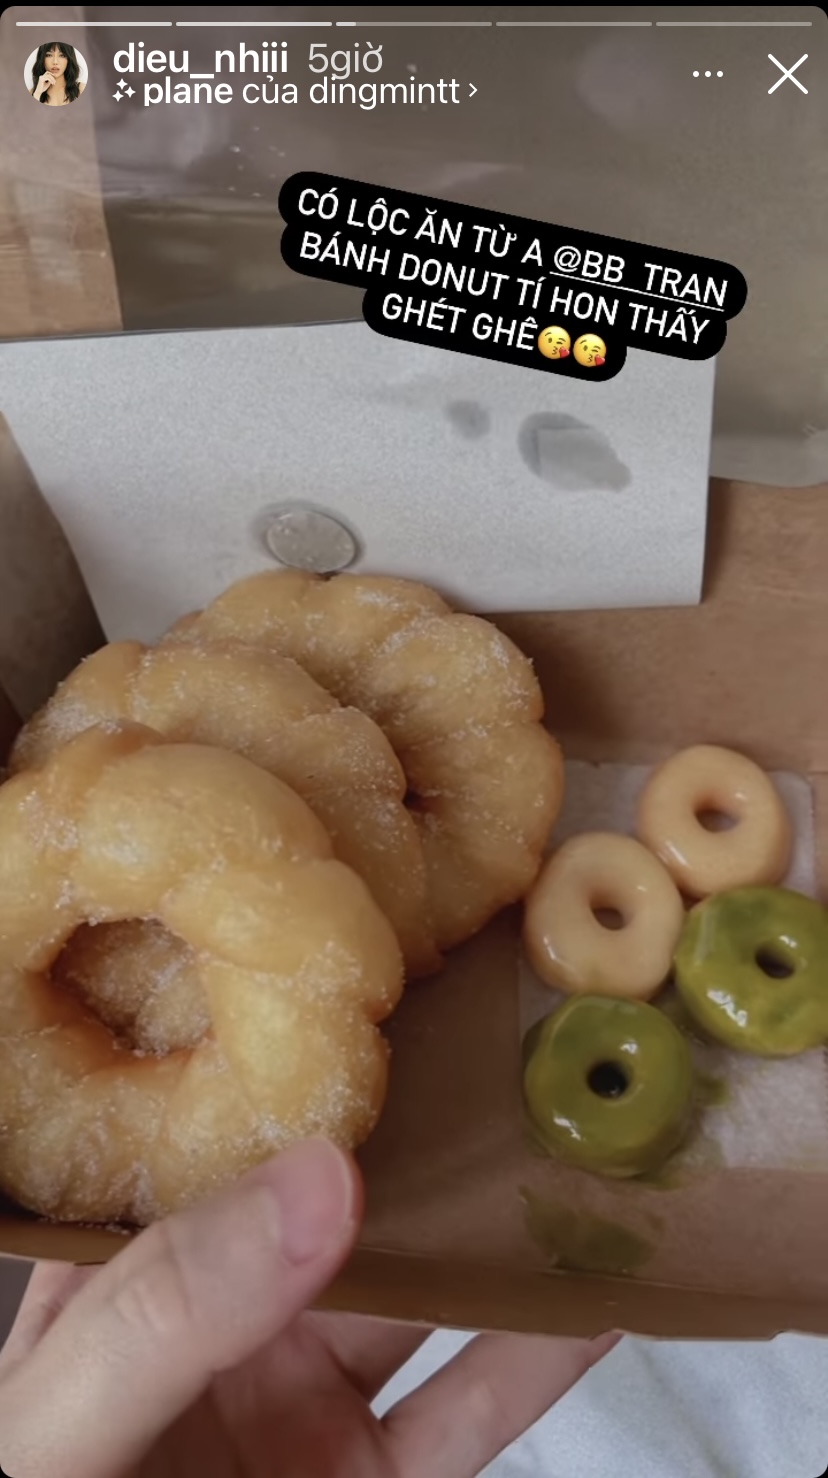 Nhờ lộc ăn từ một người bạn mà diễn viên Diệu Nhi hôm nay được thưởng thức những chiếc bánh donut mềm xốp, thơm ngon. Đặc biệt, trong hộp bánh donut của Diệu Nhi còn có những chiếc bánh tí hon dễ thương.